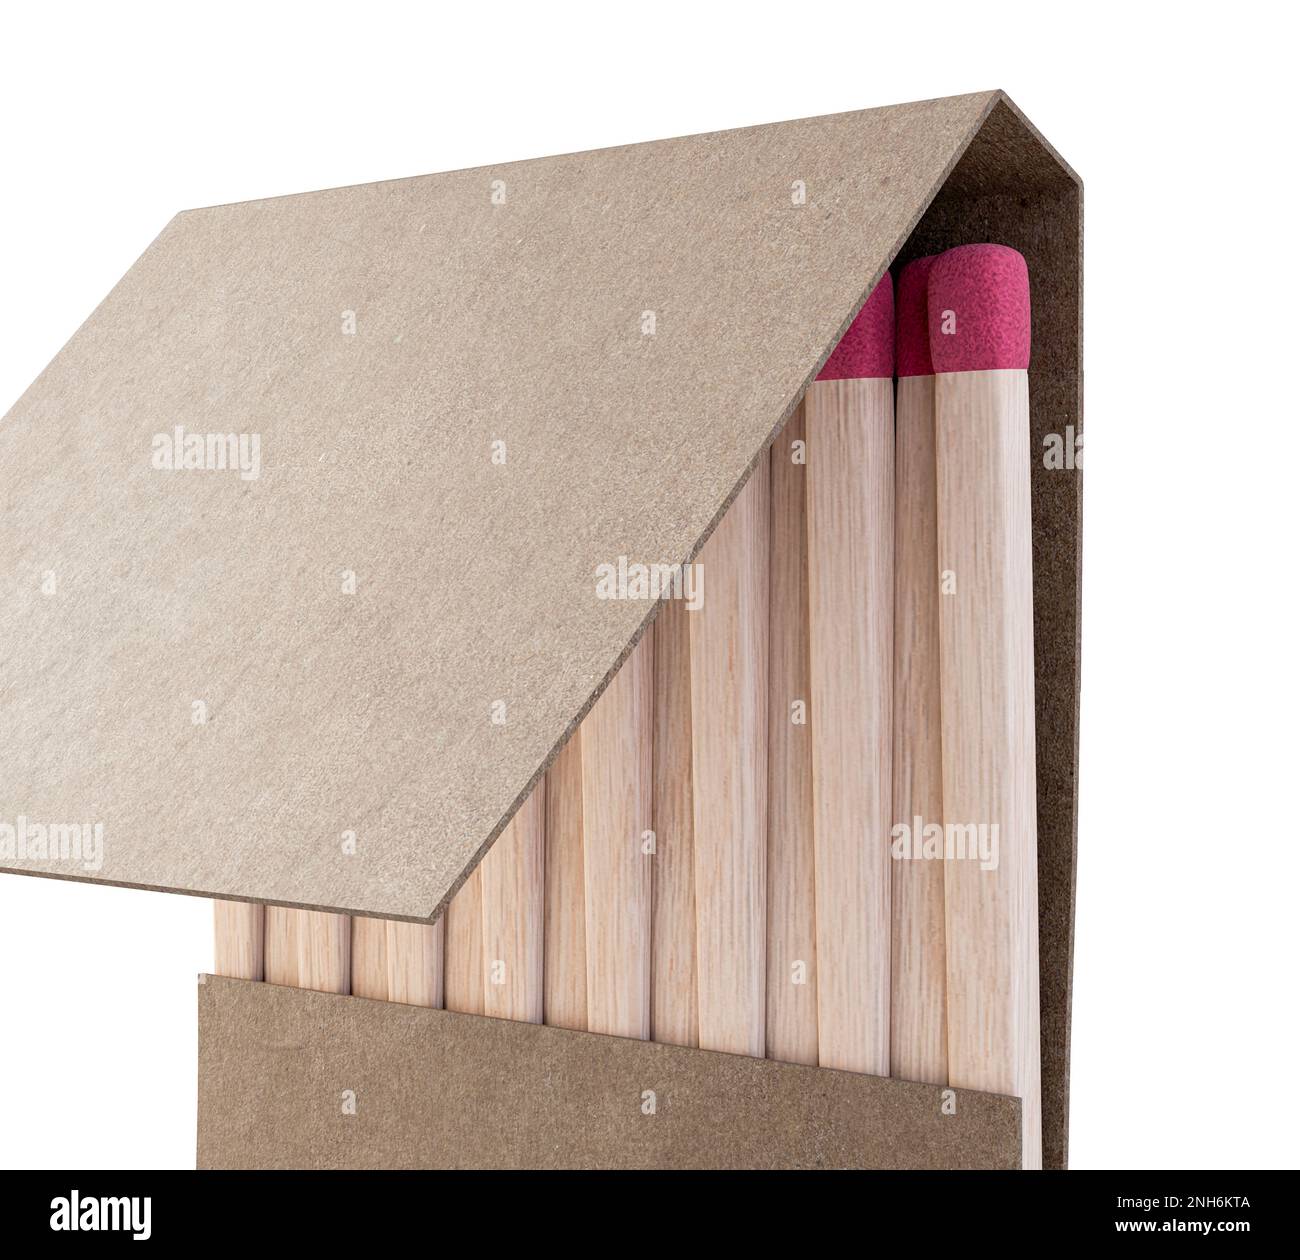 Un libro aperto di fiammiferi realizzati con legno con punte rosa in un generico libro di cartone bianco senza marchio su uno sfondo isolato - rendering 3D Foto Stock